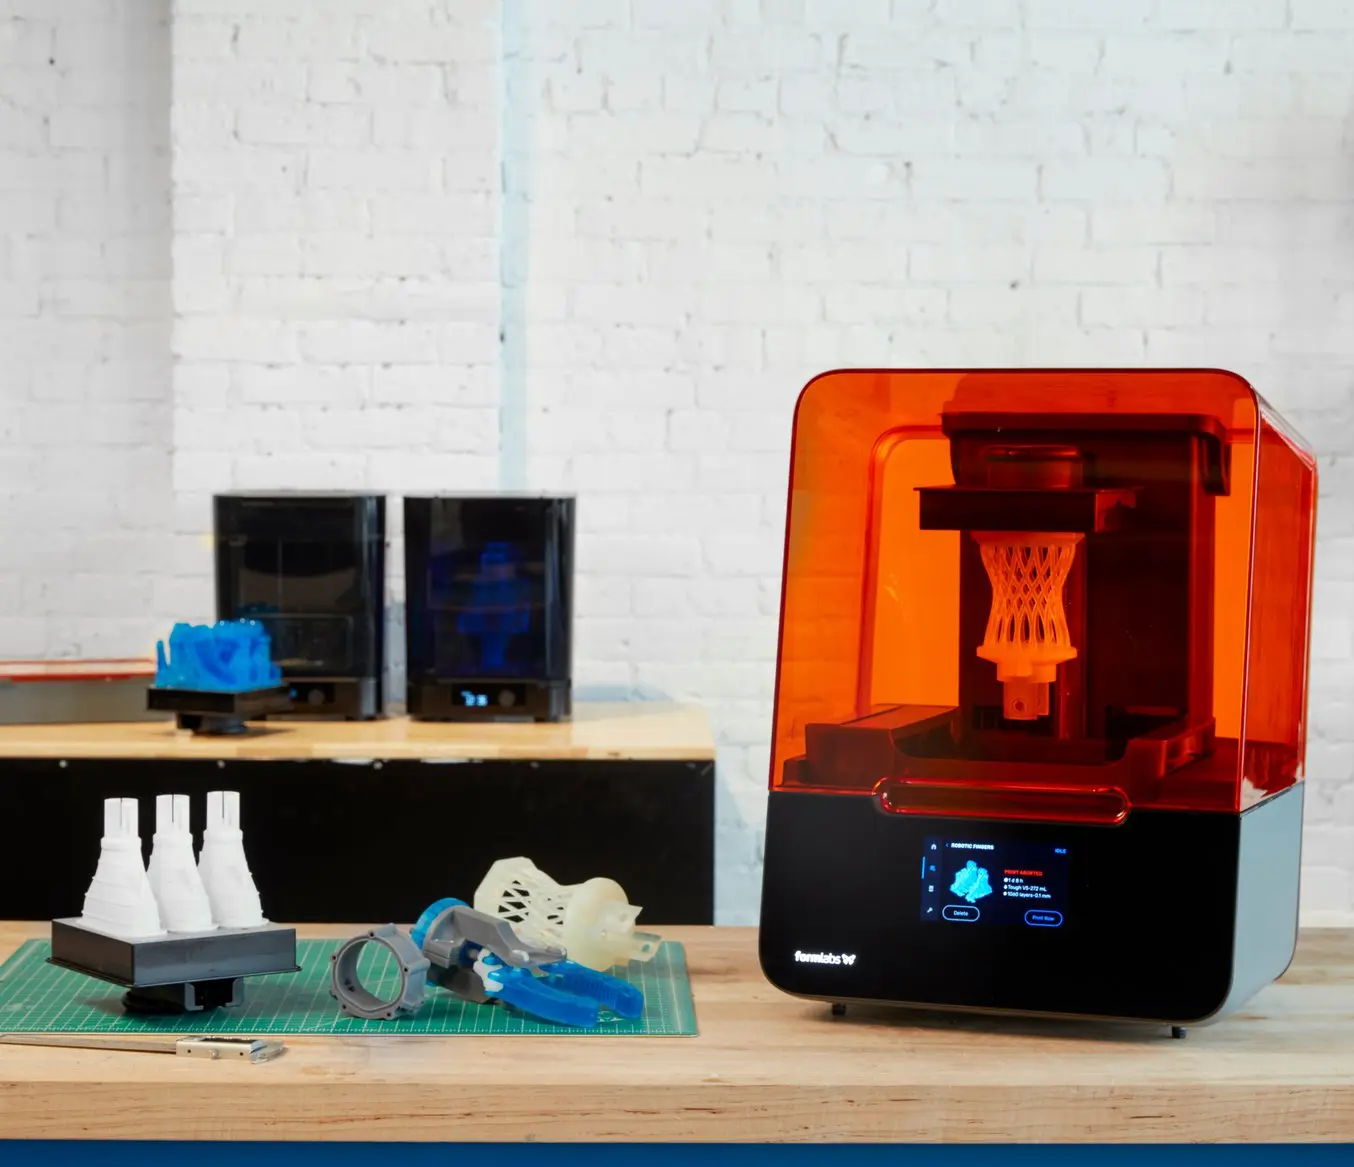 Imprimantes 3D Formlabs